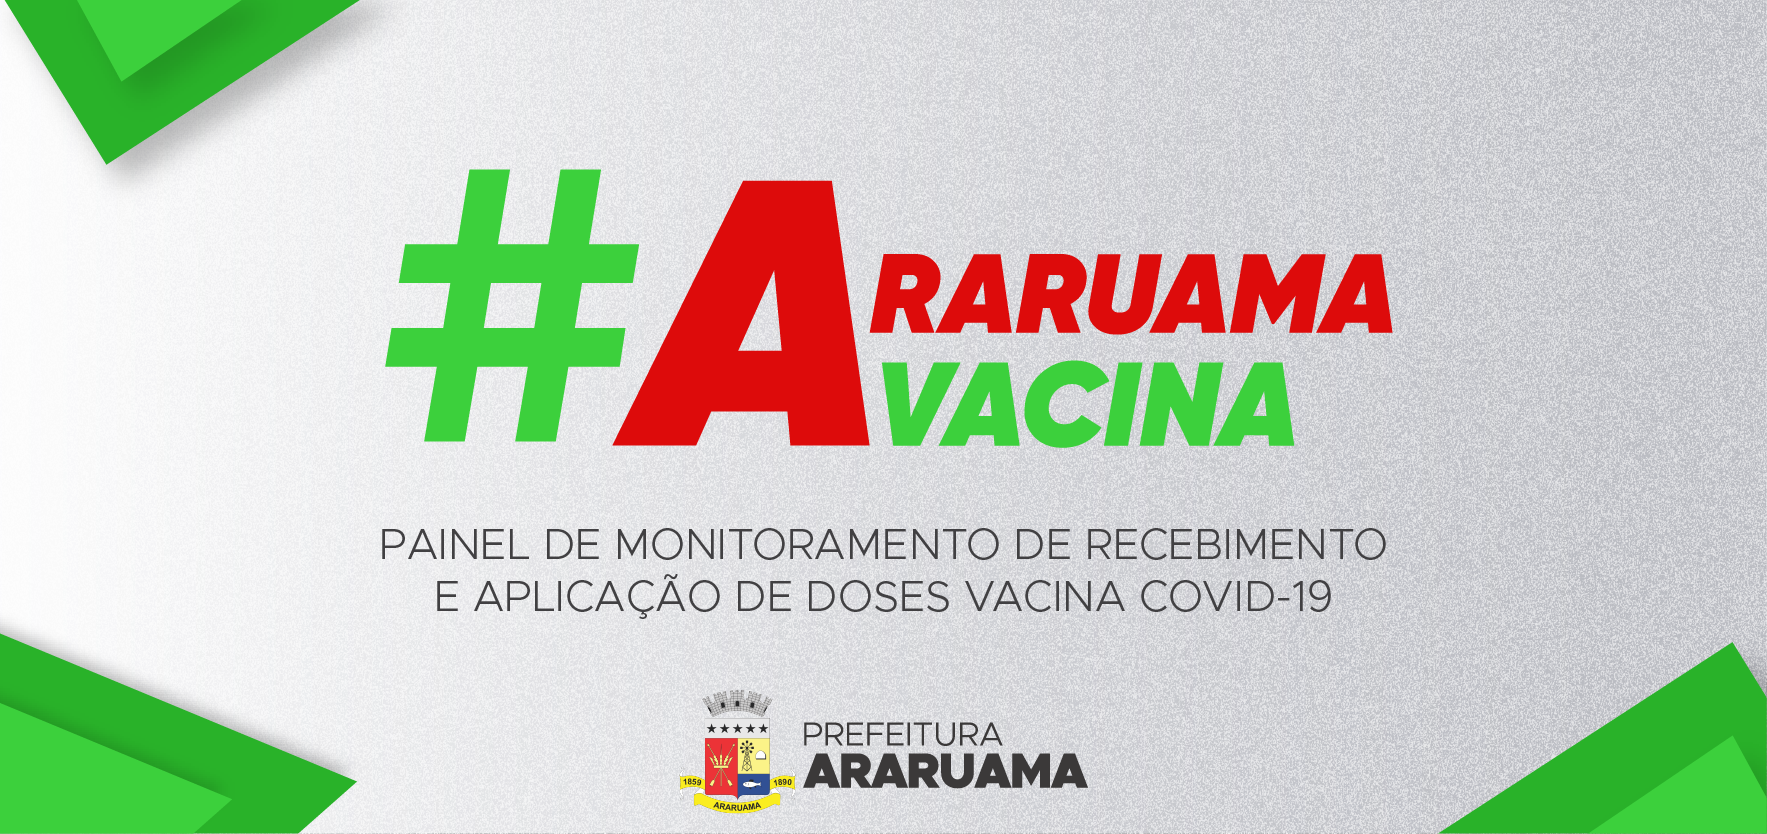 https://www.araruama.rj.gov.br/vacina/